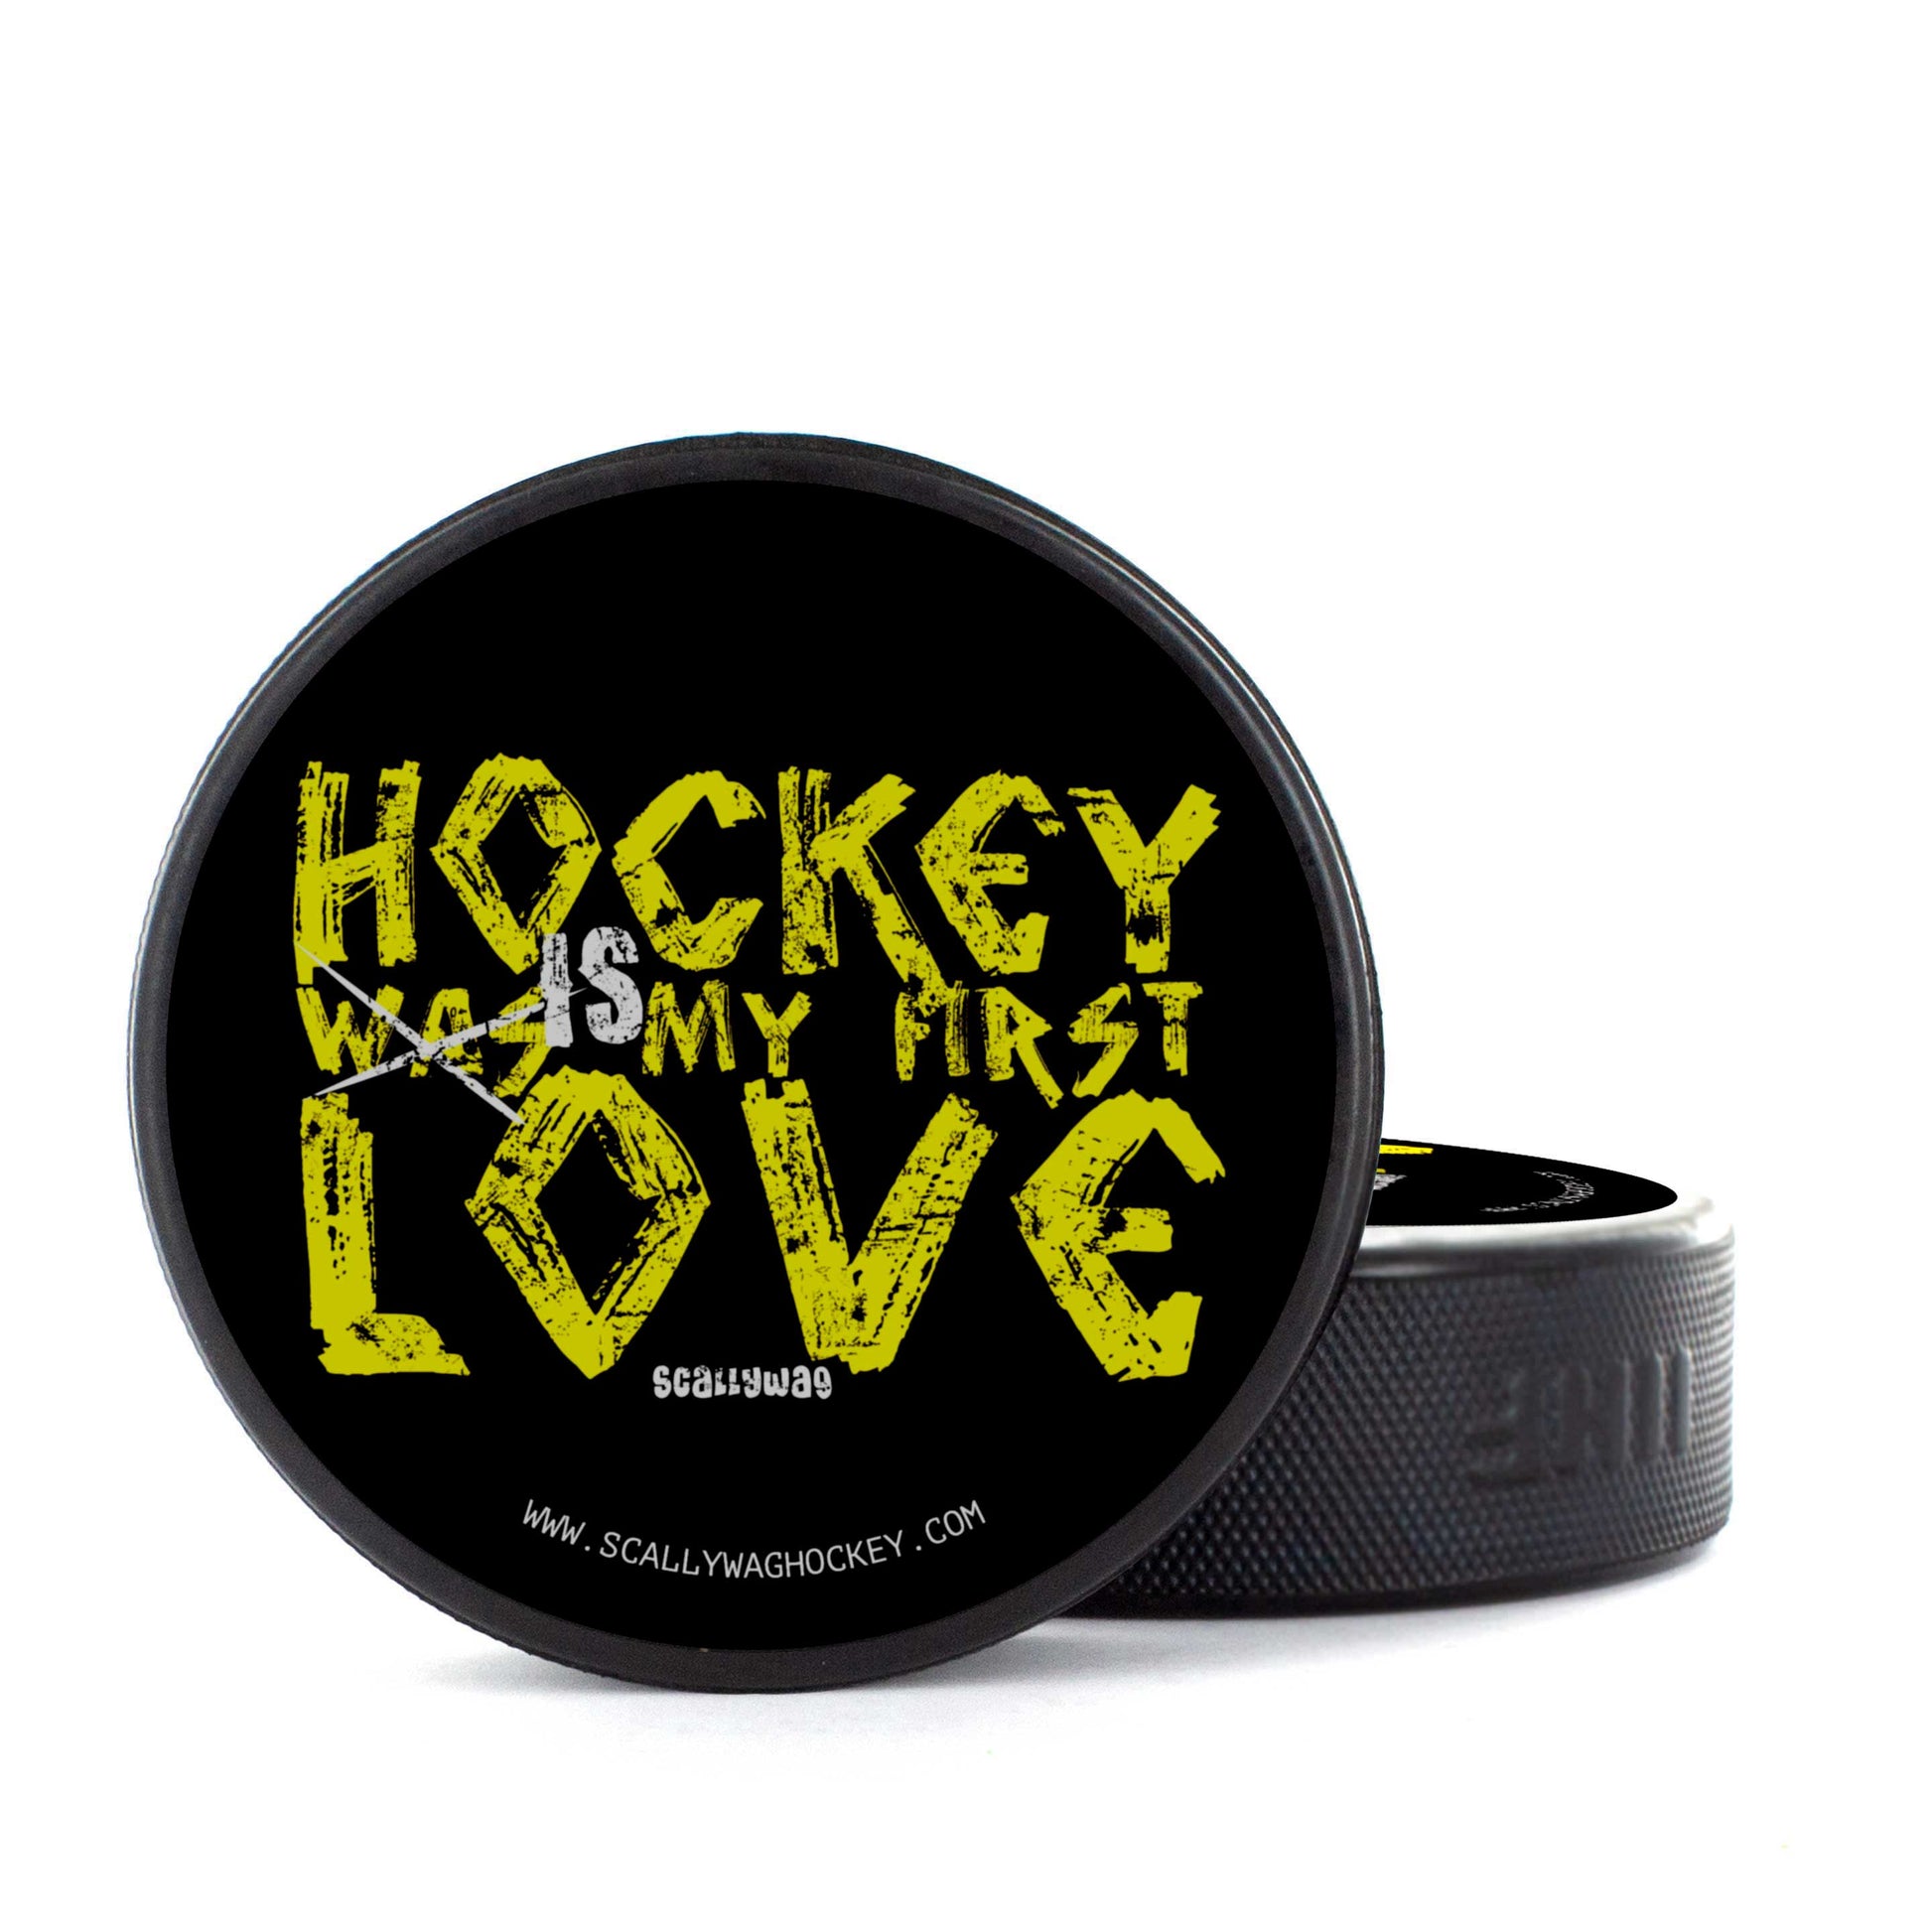 Eishockey Puck FIRST LOVE 6,95 € - COR3zilla